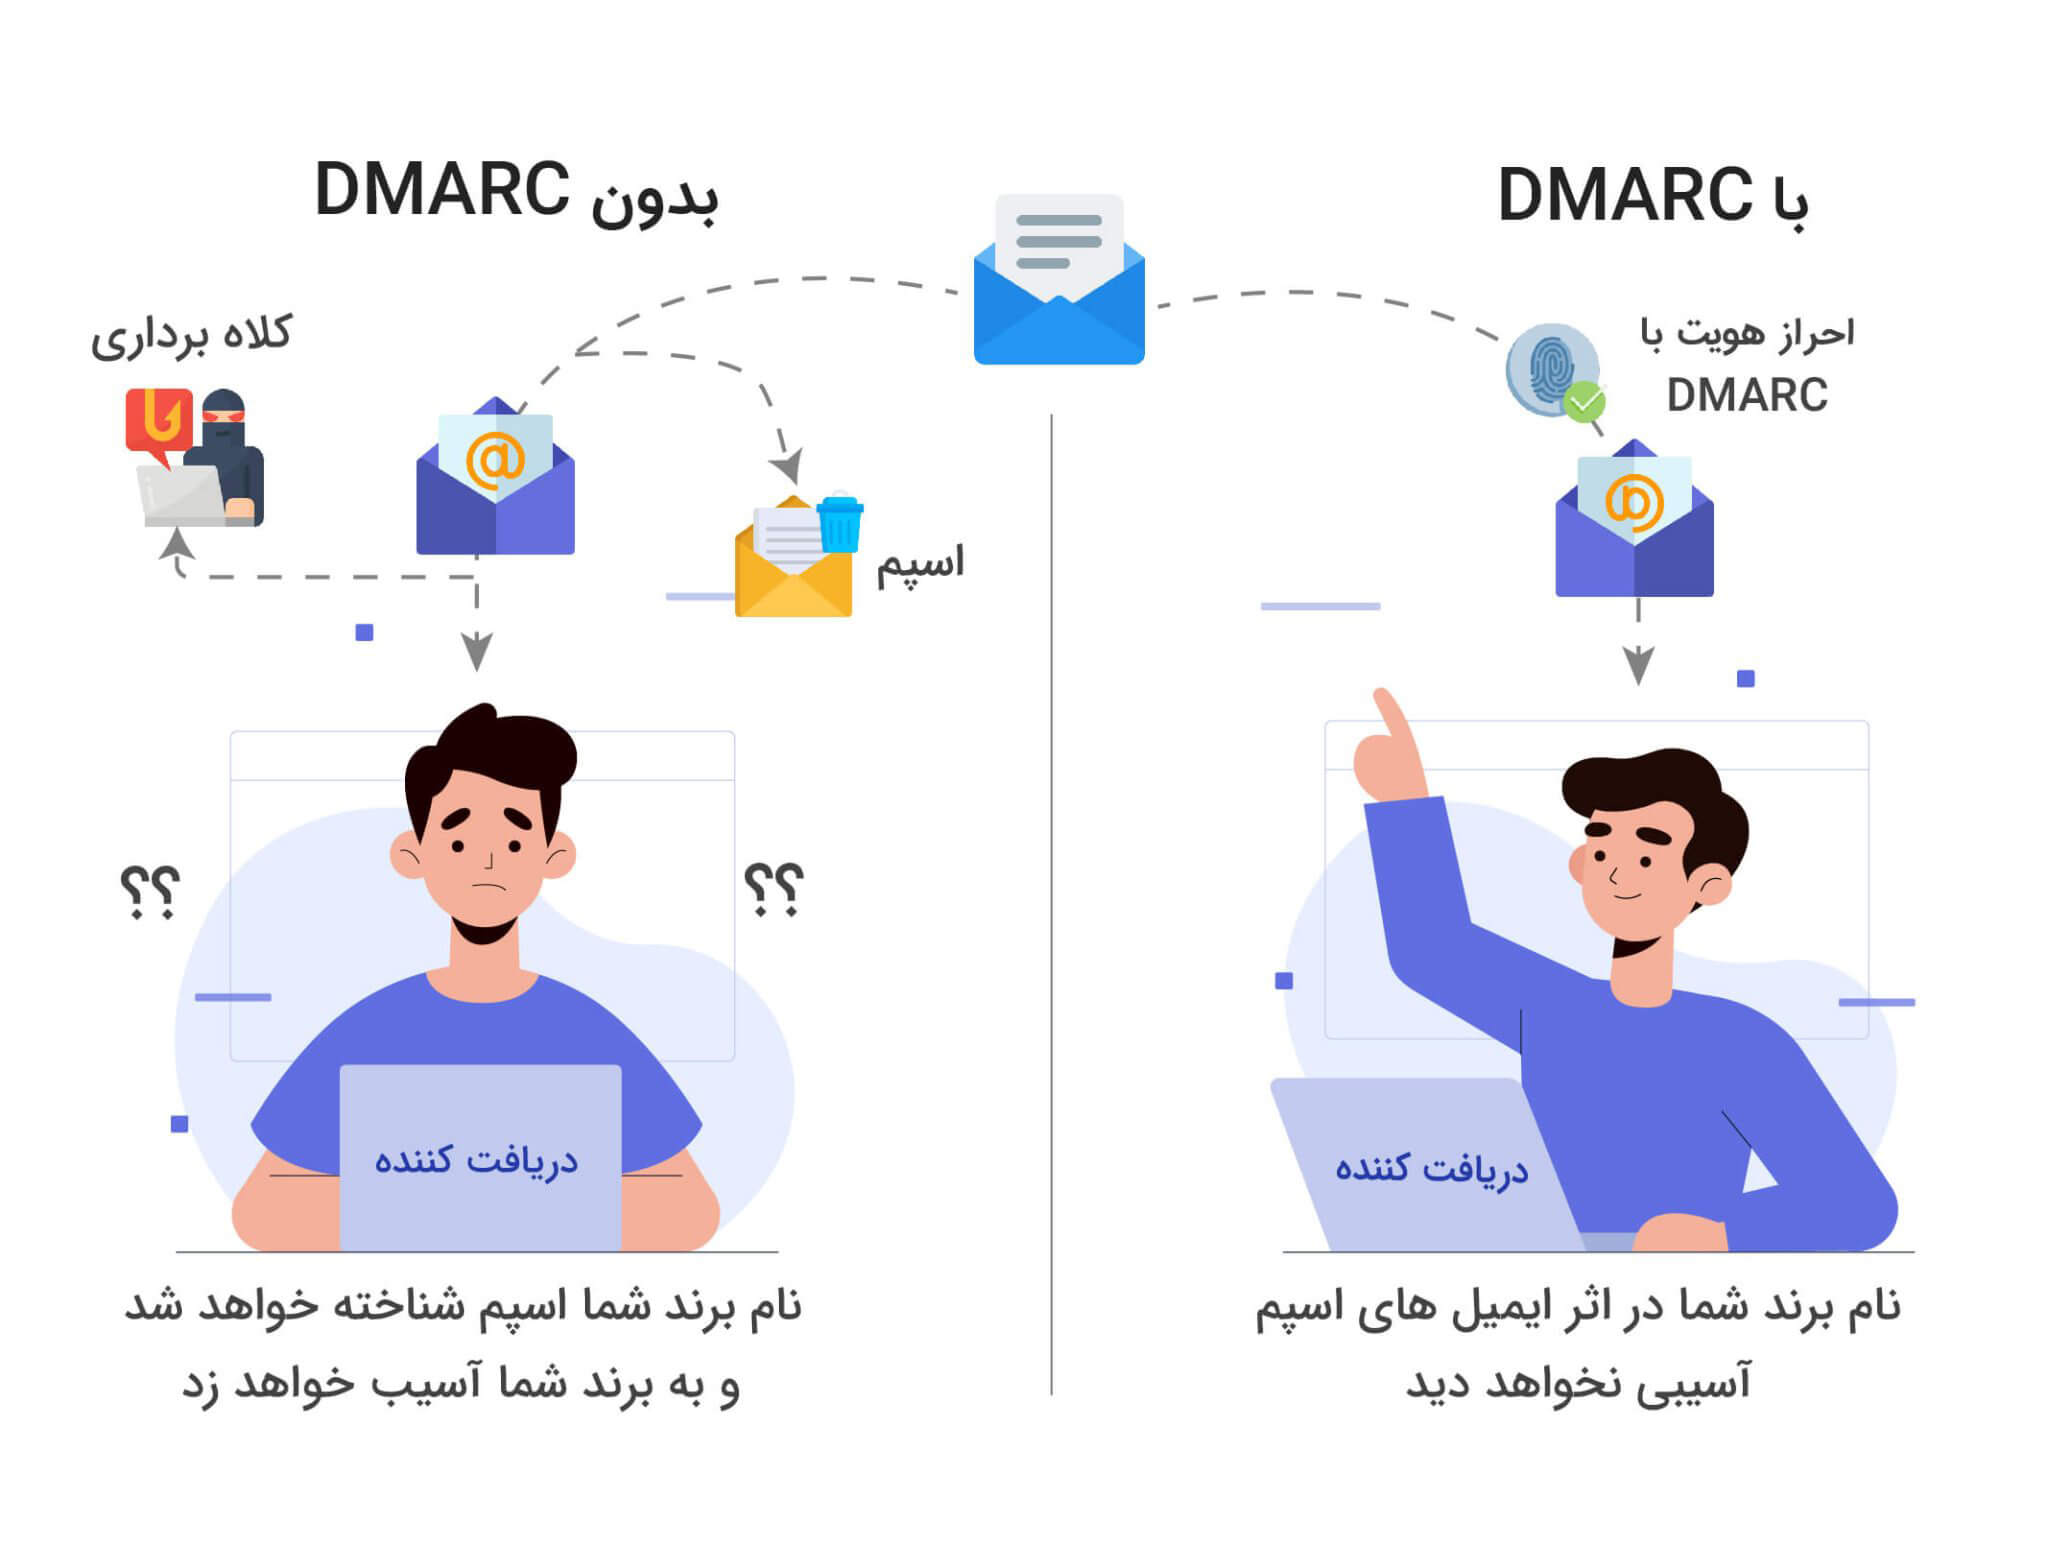 ست کردن رکورد DMARC